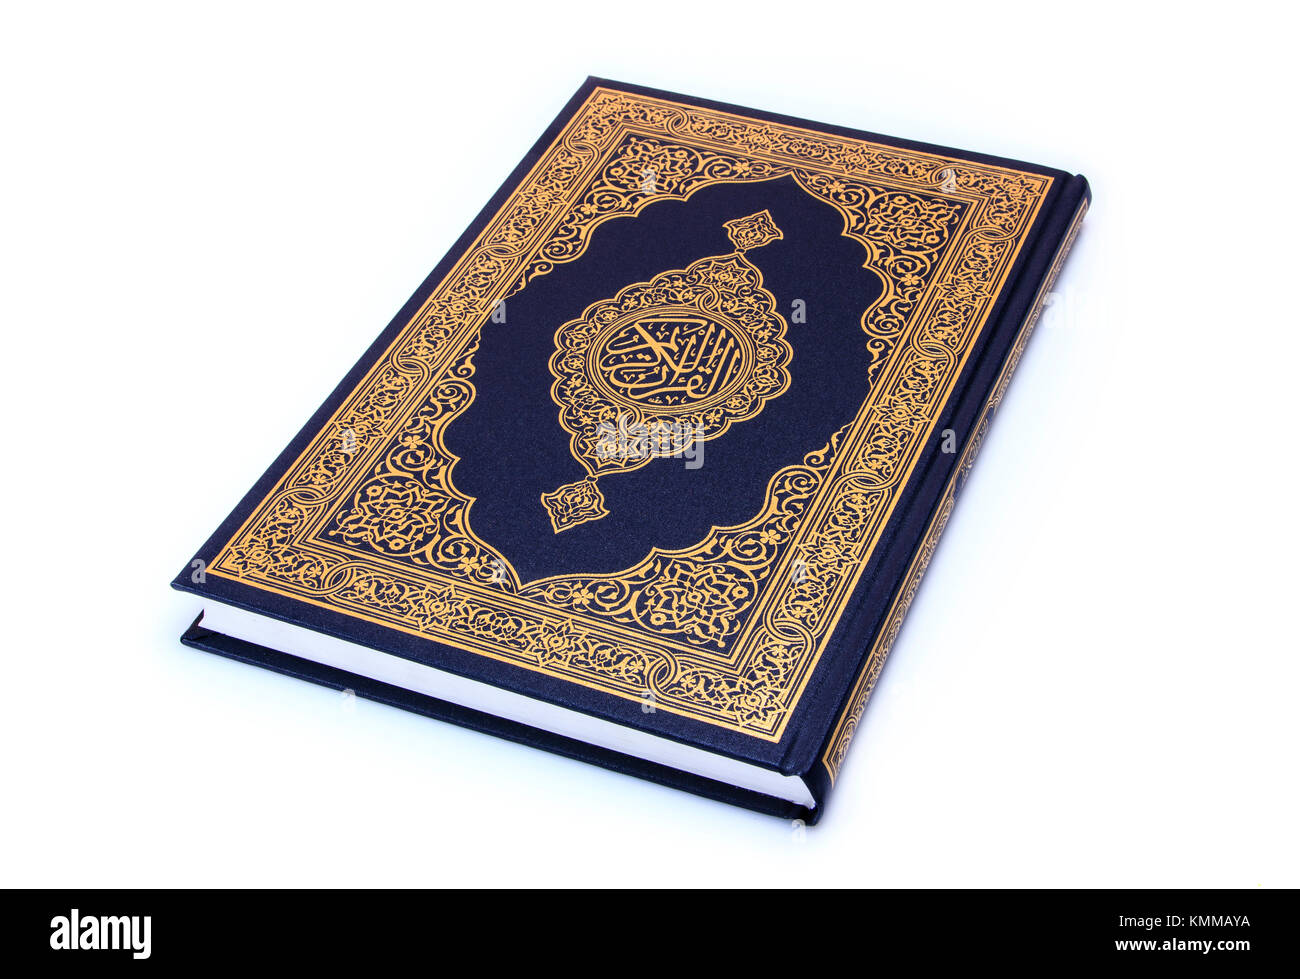 Koran oder Koran, ist die zentrale religiöse Text des Islam, die Muslime glauben eine Offenbarung von Gott (Arabisch: Allah). Ihre Status unter werden. Stockfoto